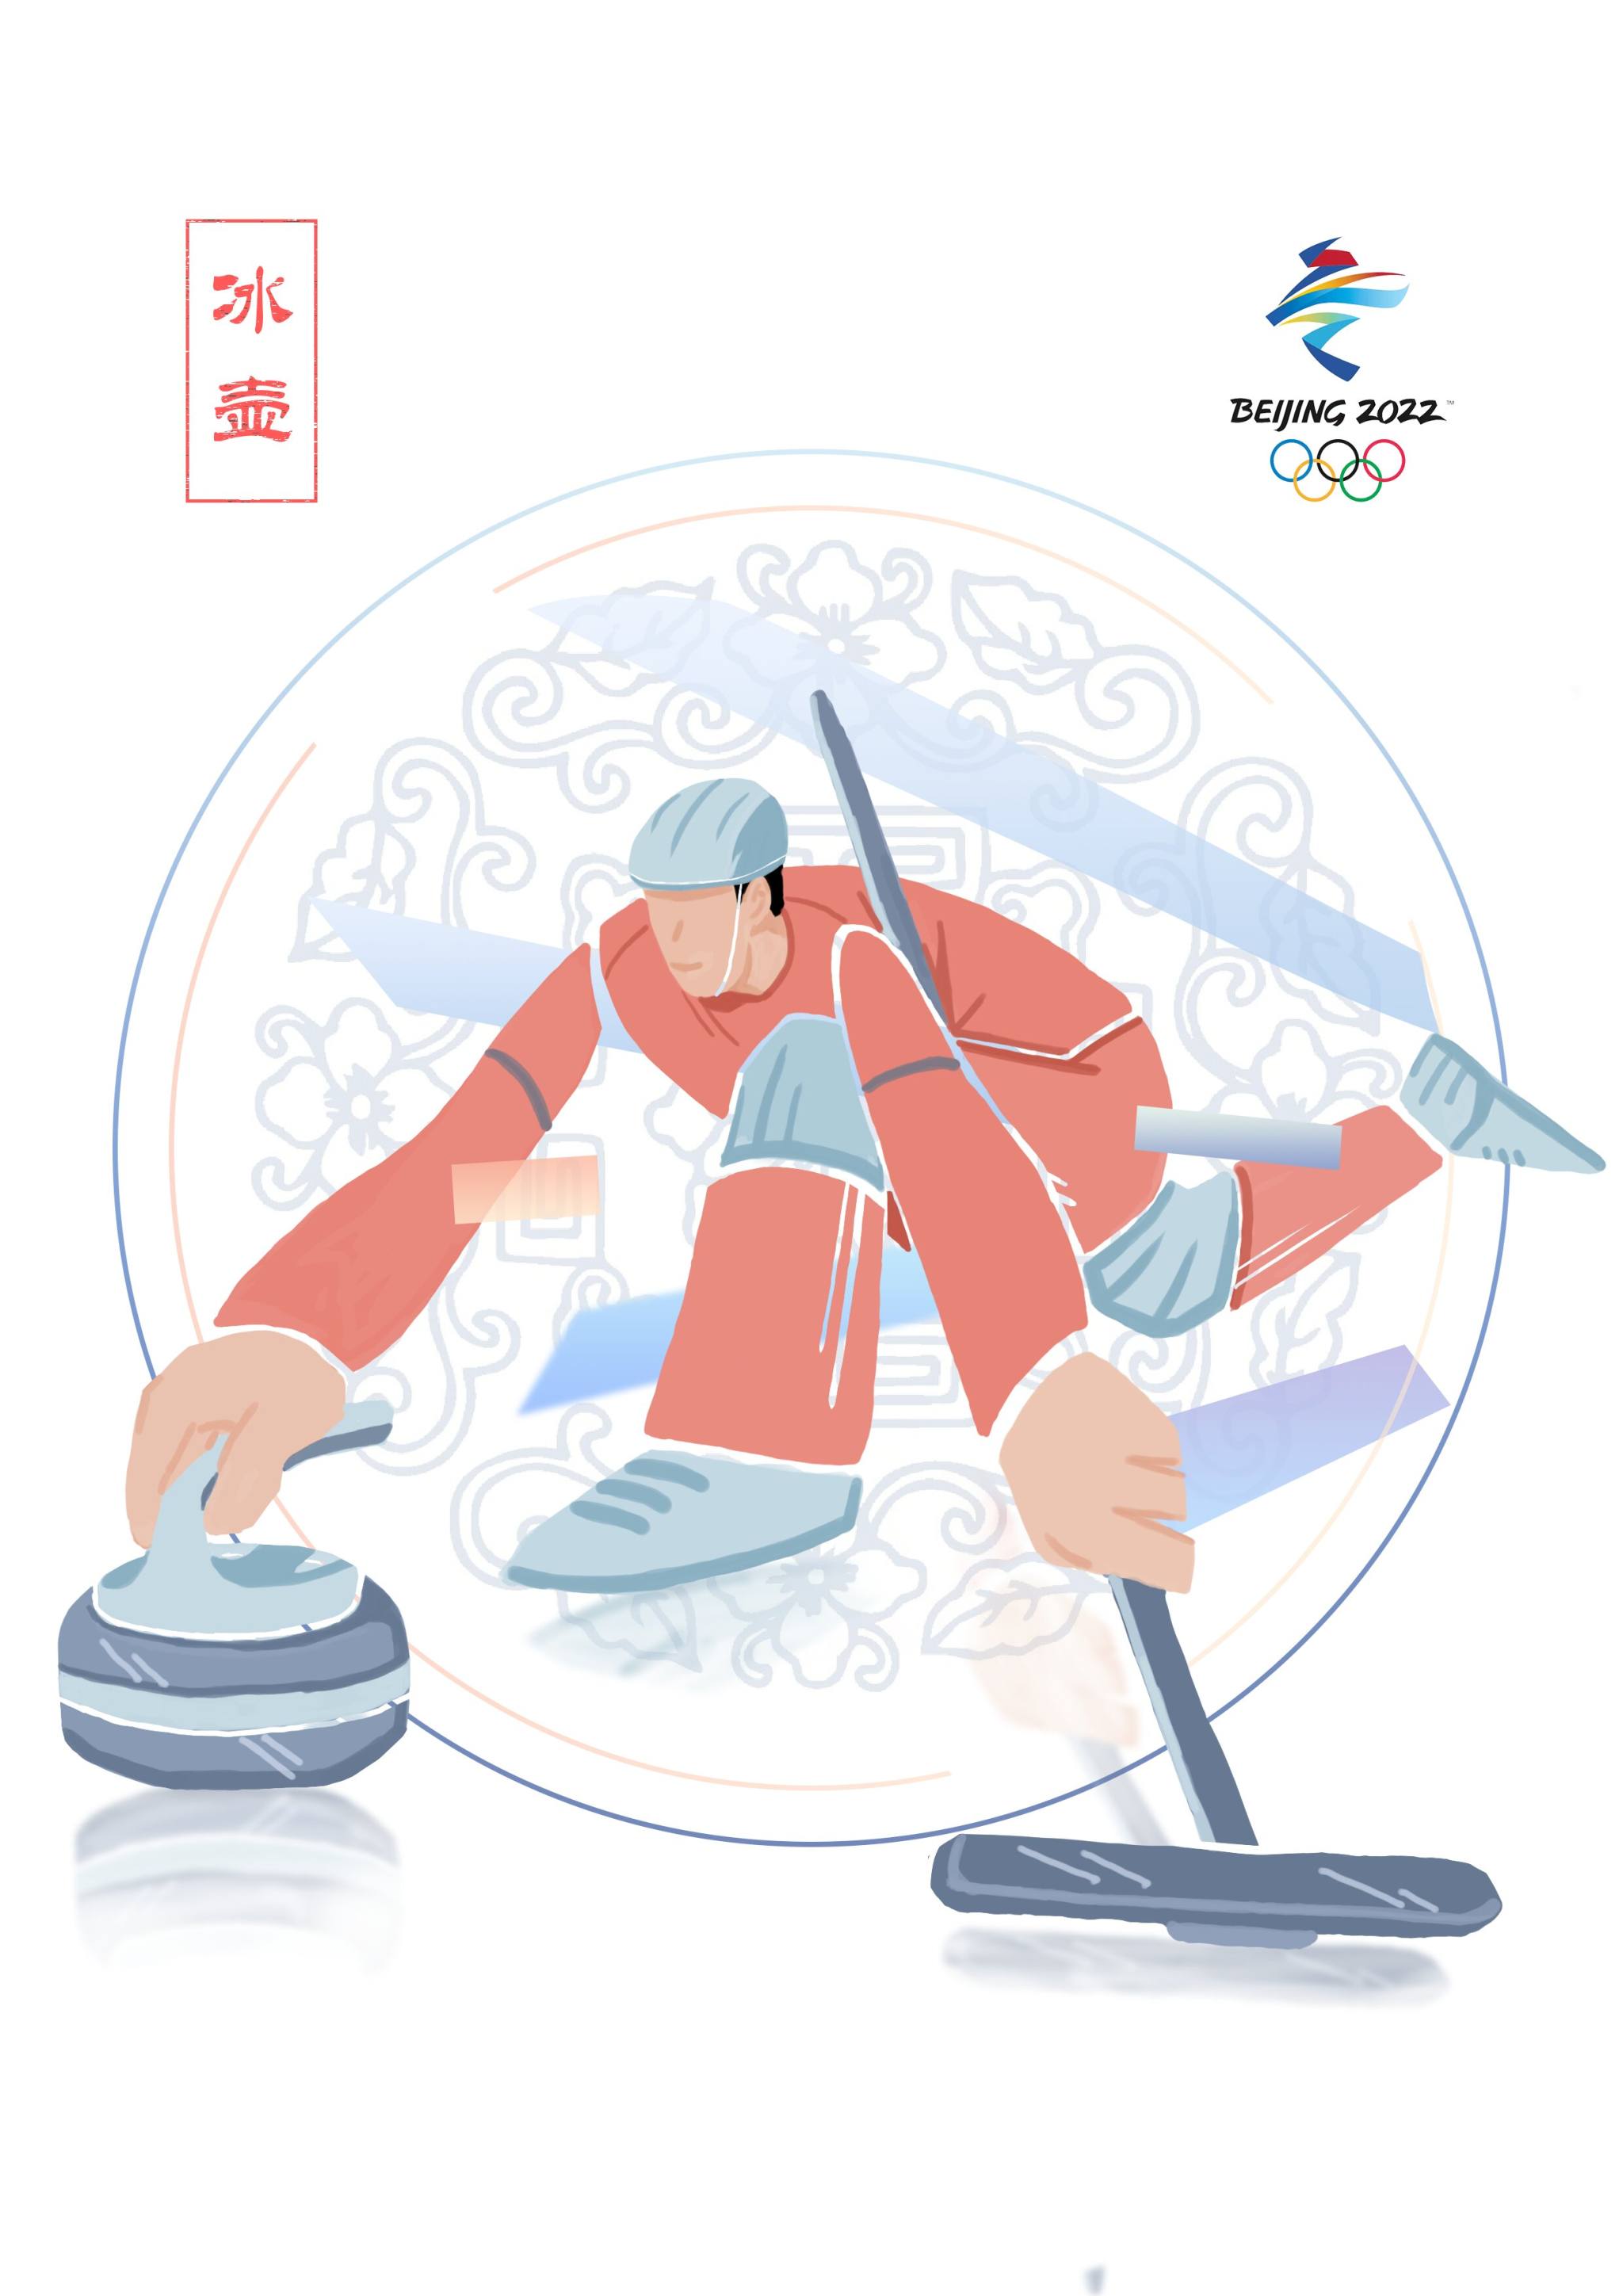 这次的作品采取了六项冬奥会项目,分别是单板滑雪,高山滑雪,自由滑雪